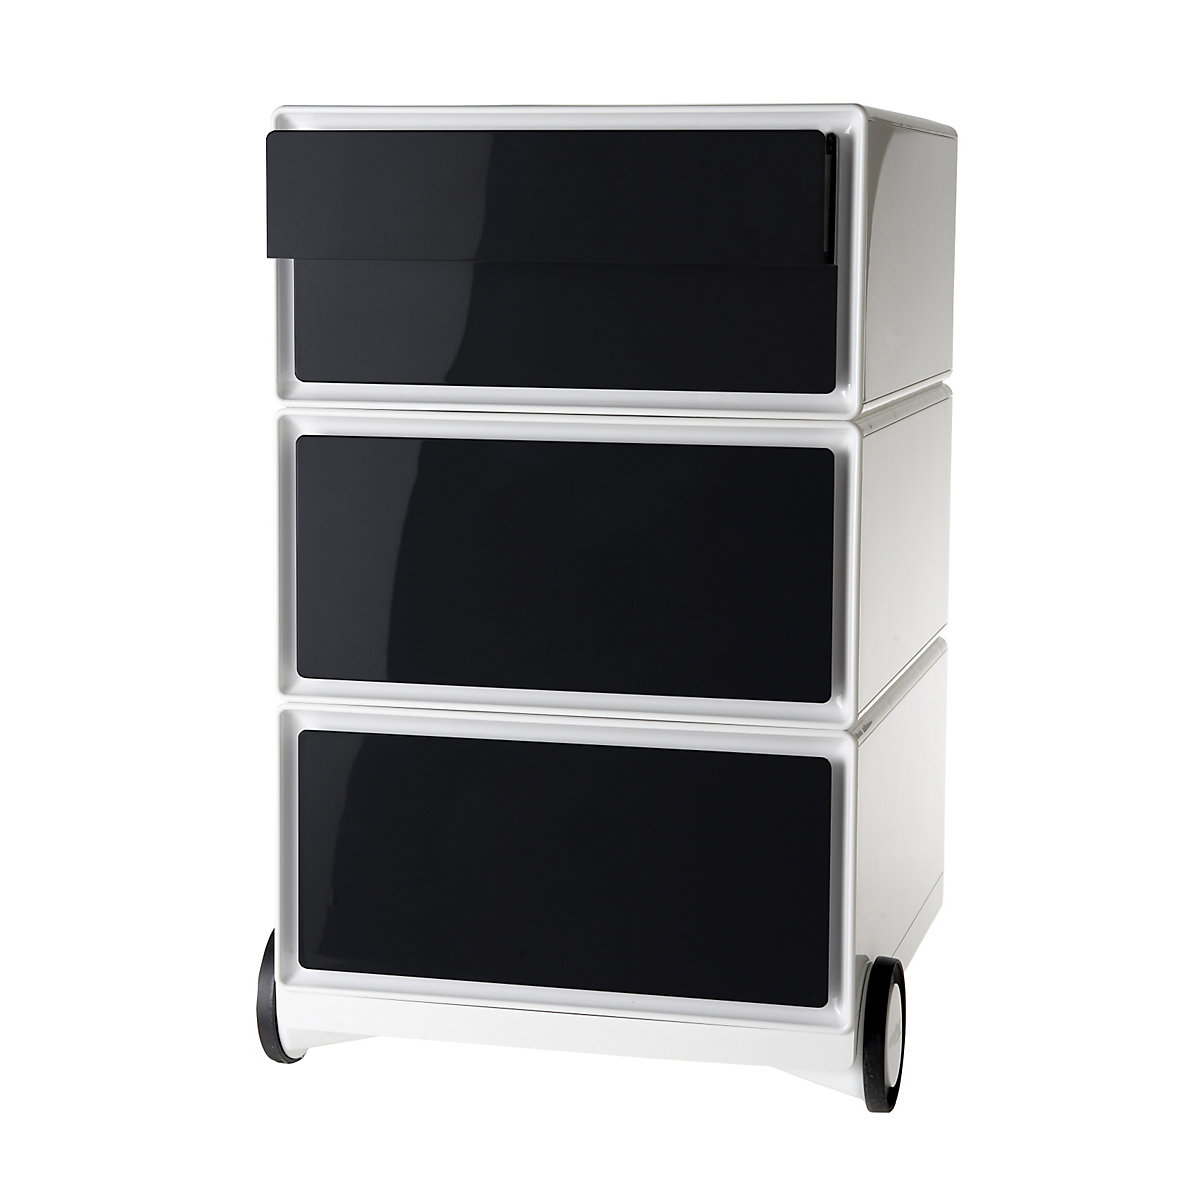 Pokretni ladičar easyBox® – Paperflow, 2 ladice, 2 plitke ladice, u bijeloj / crnoj boji